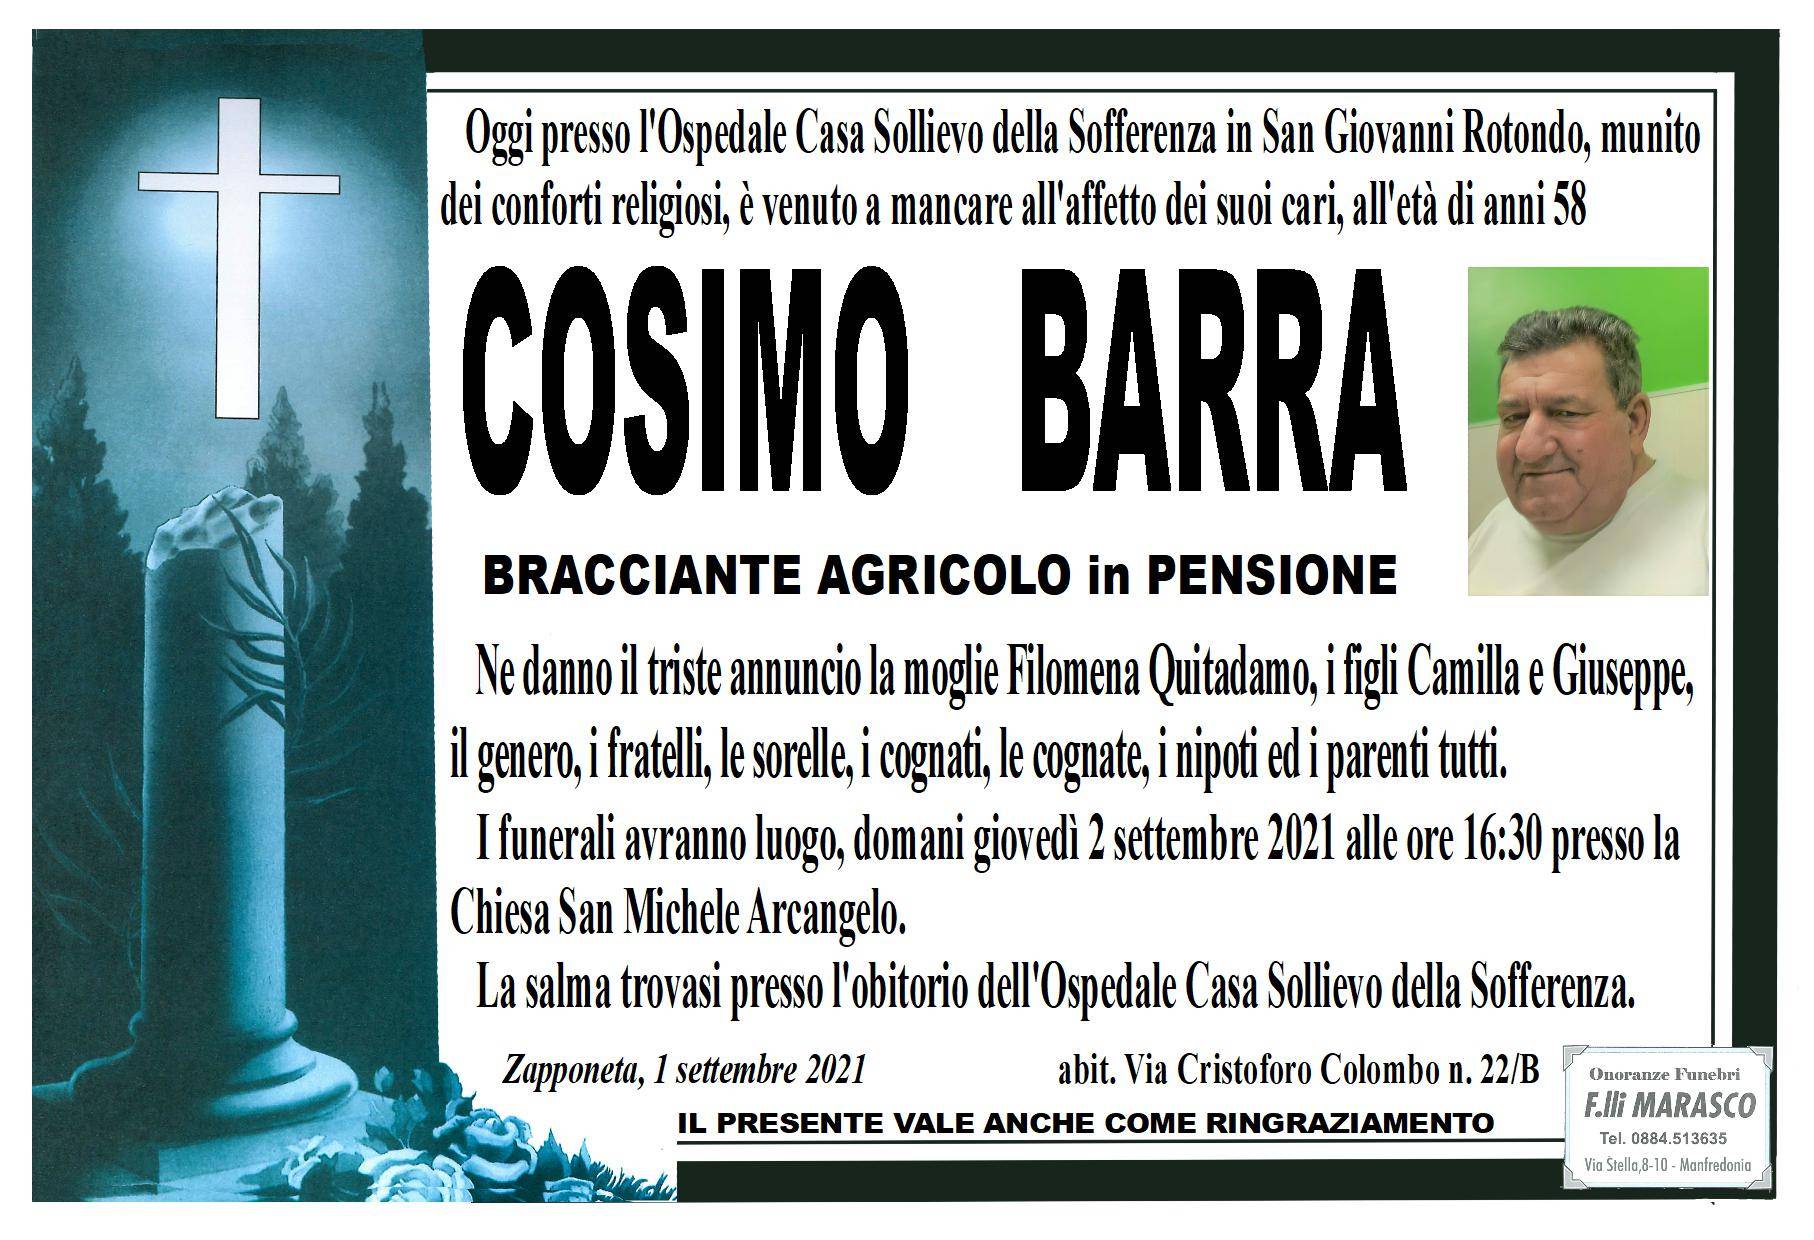 Cosimo Barra